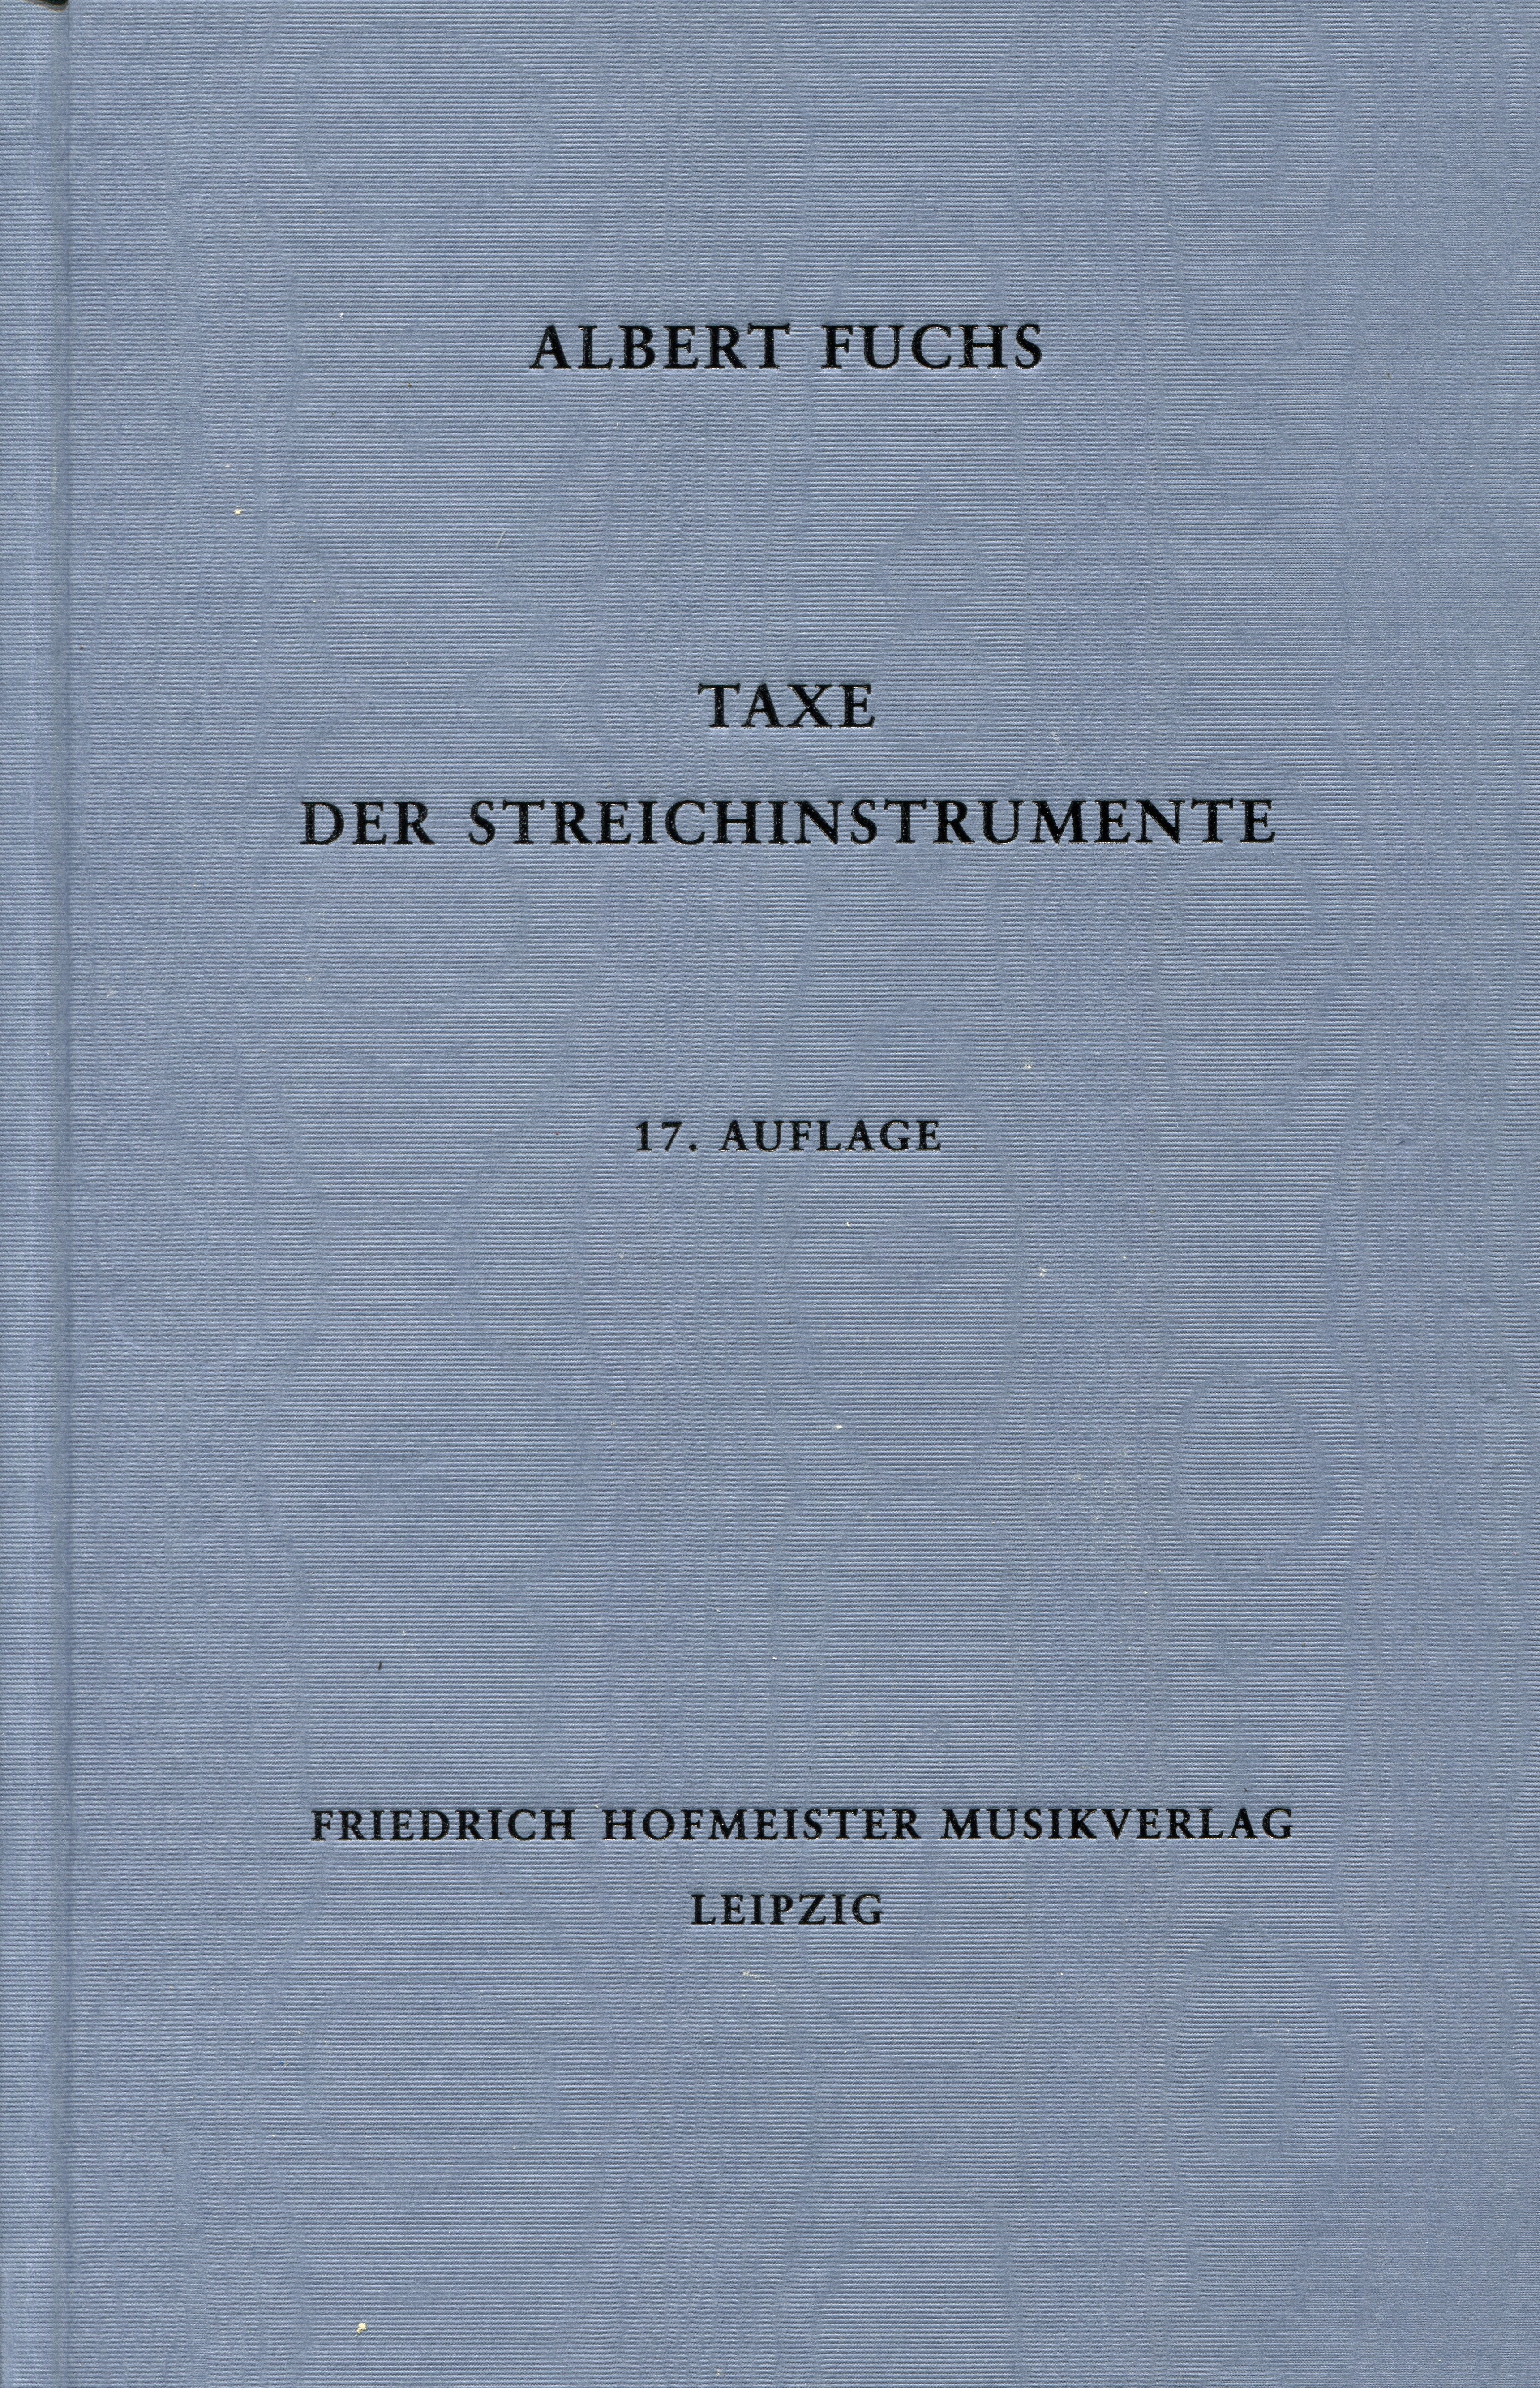 A. Fuchs Taxe der Streichinstrumente17. edition 2017